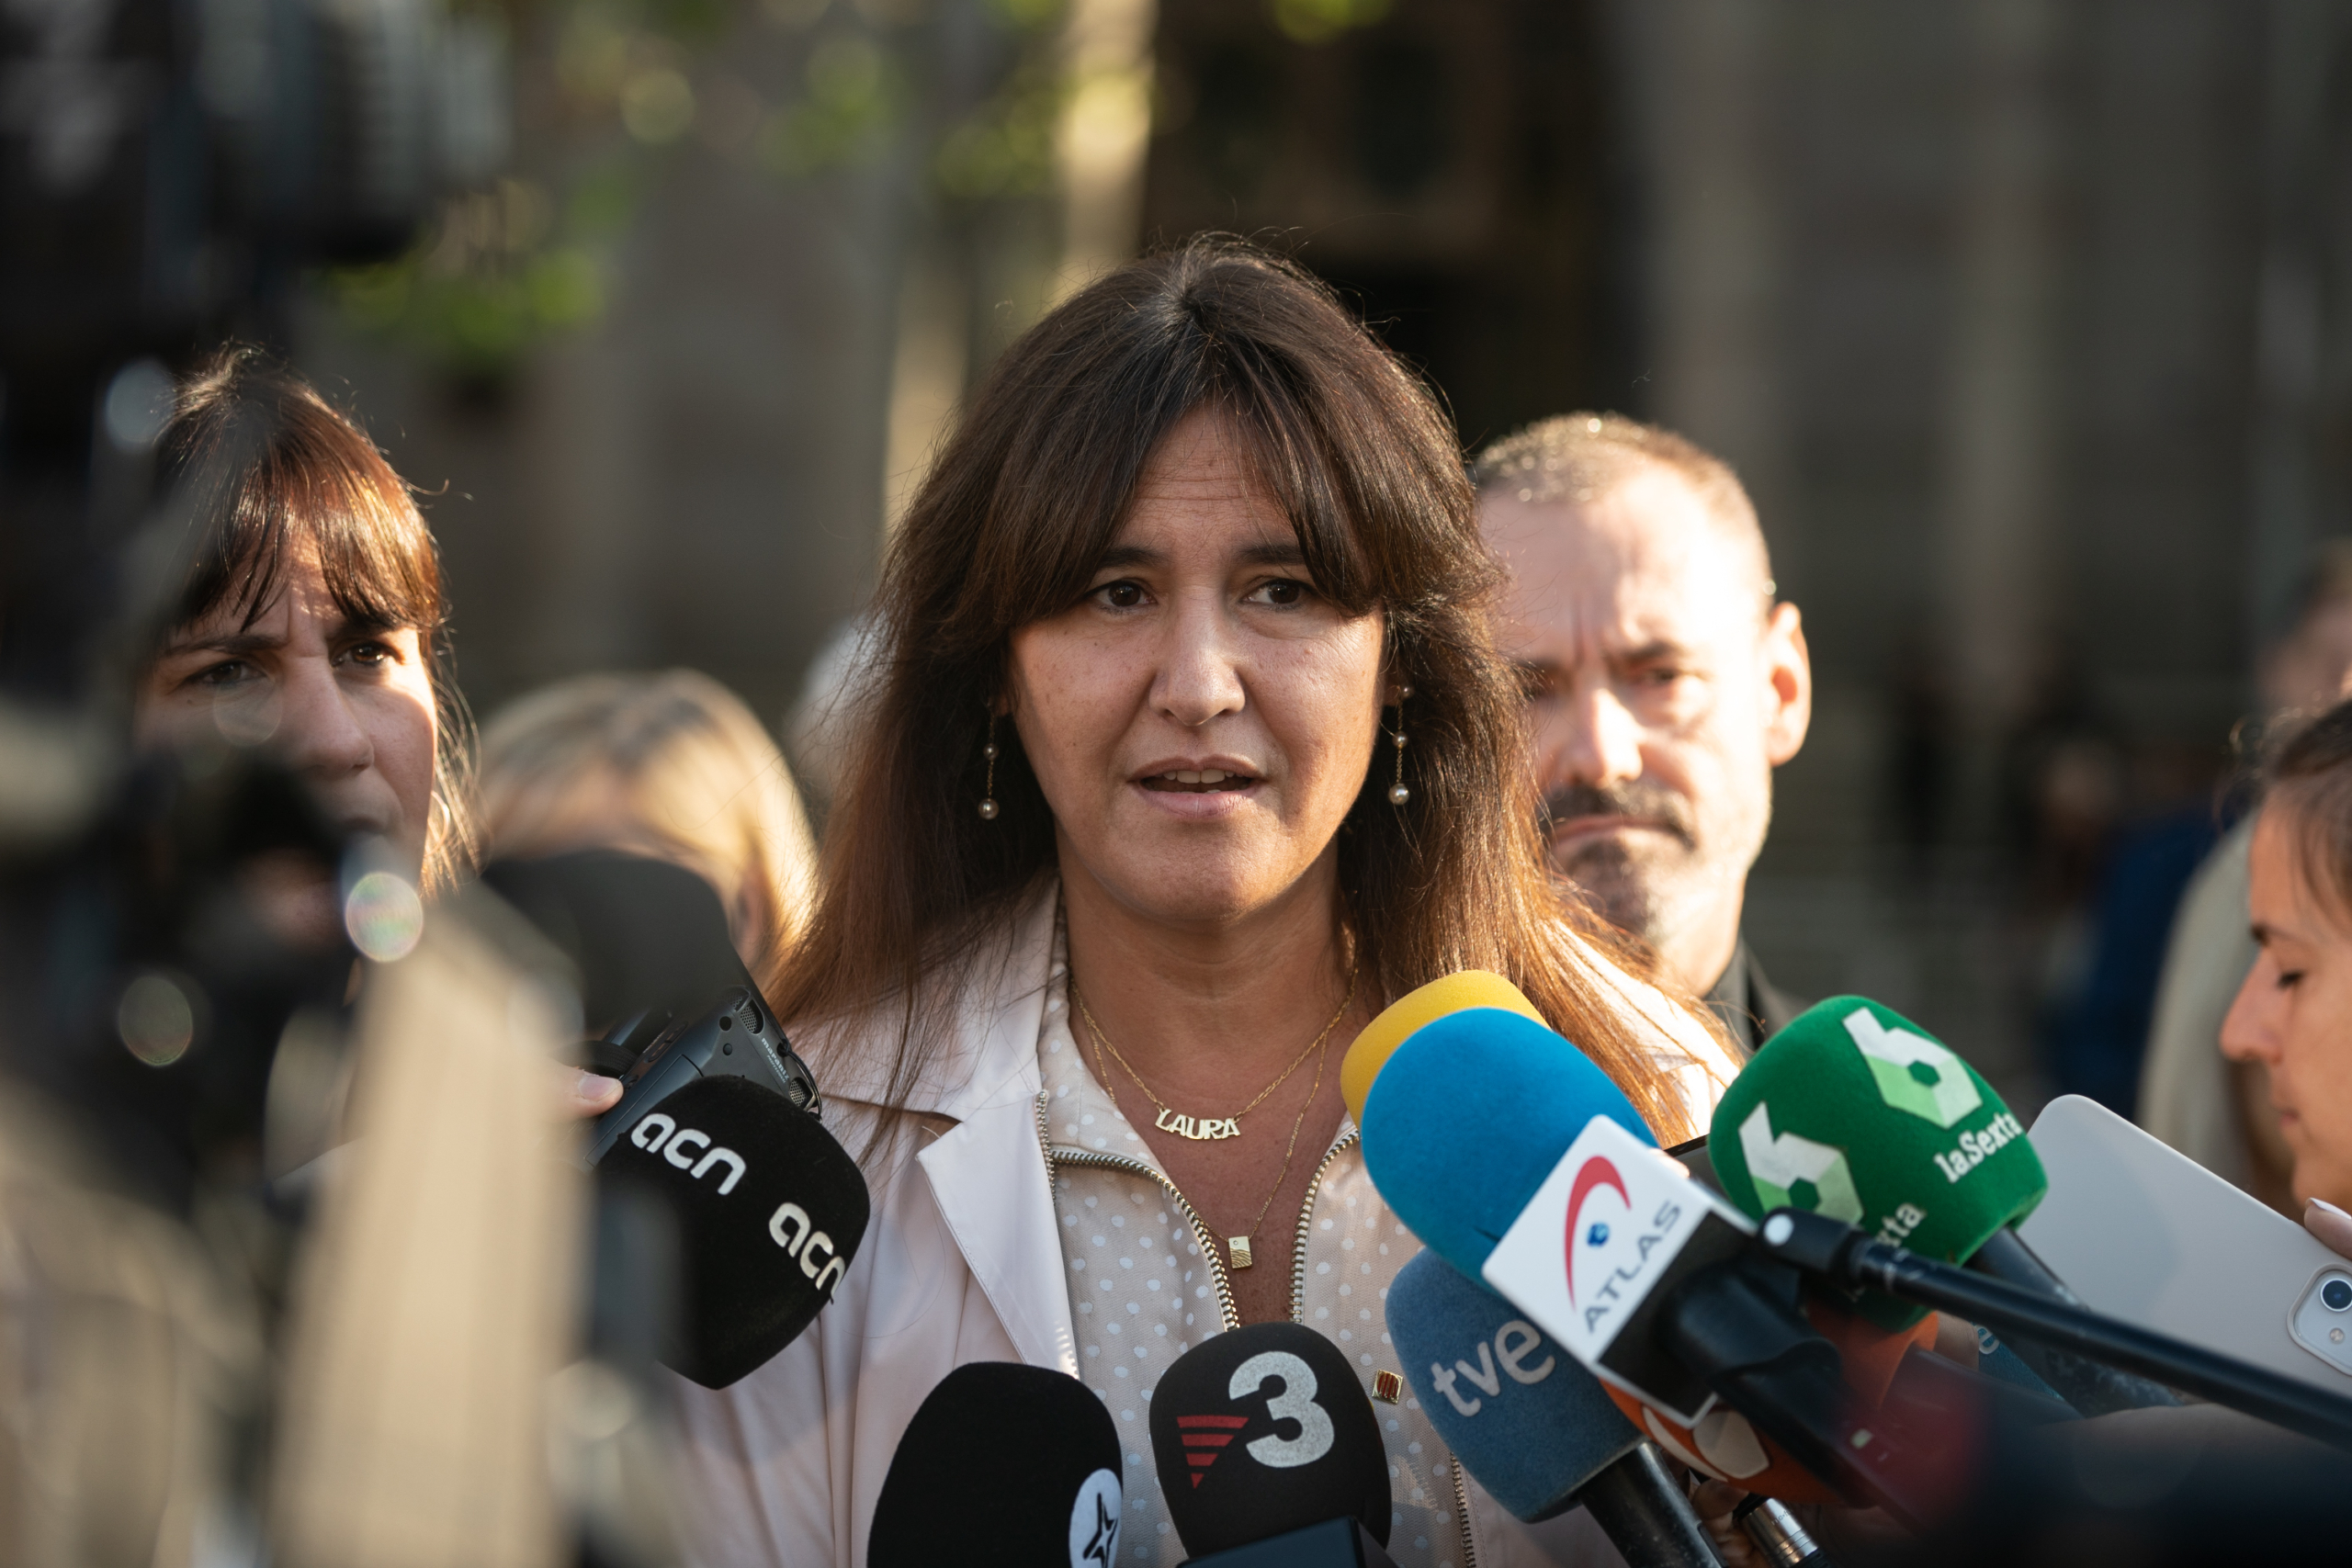 La presidenta del Parlament, Laura Borràs, abans del judici a l'anterior Mesa, donant suport als encausats davant del TSJC / Mireia Comas